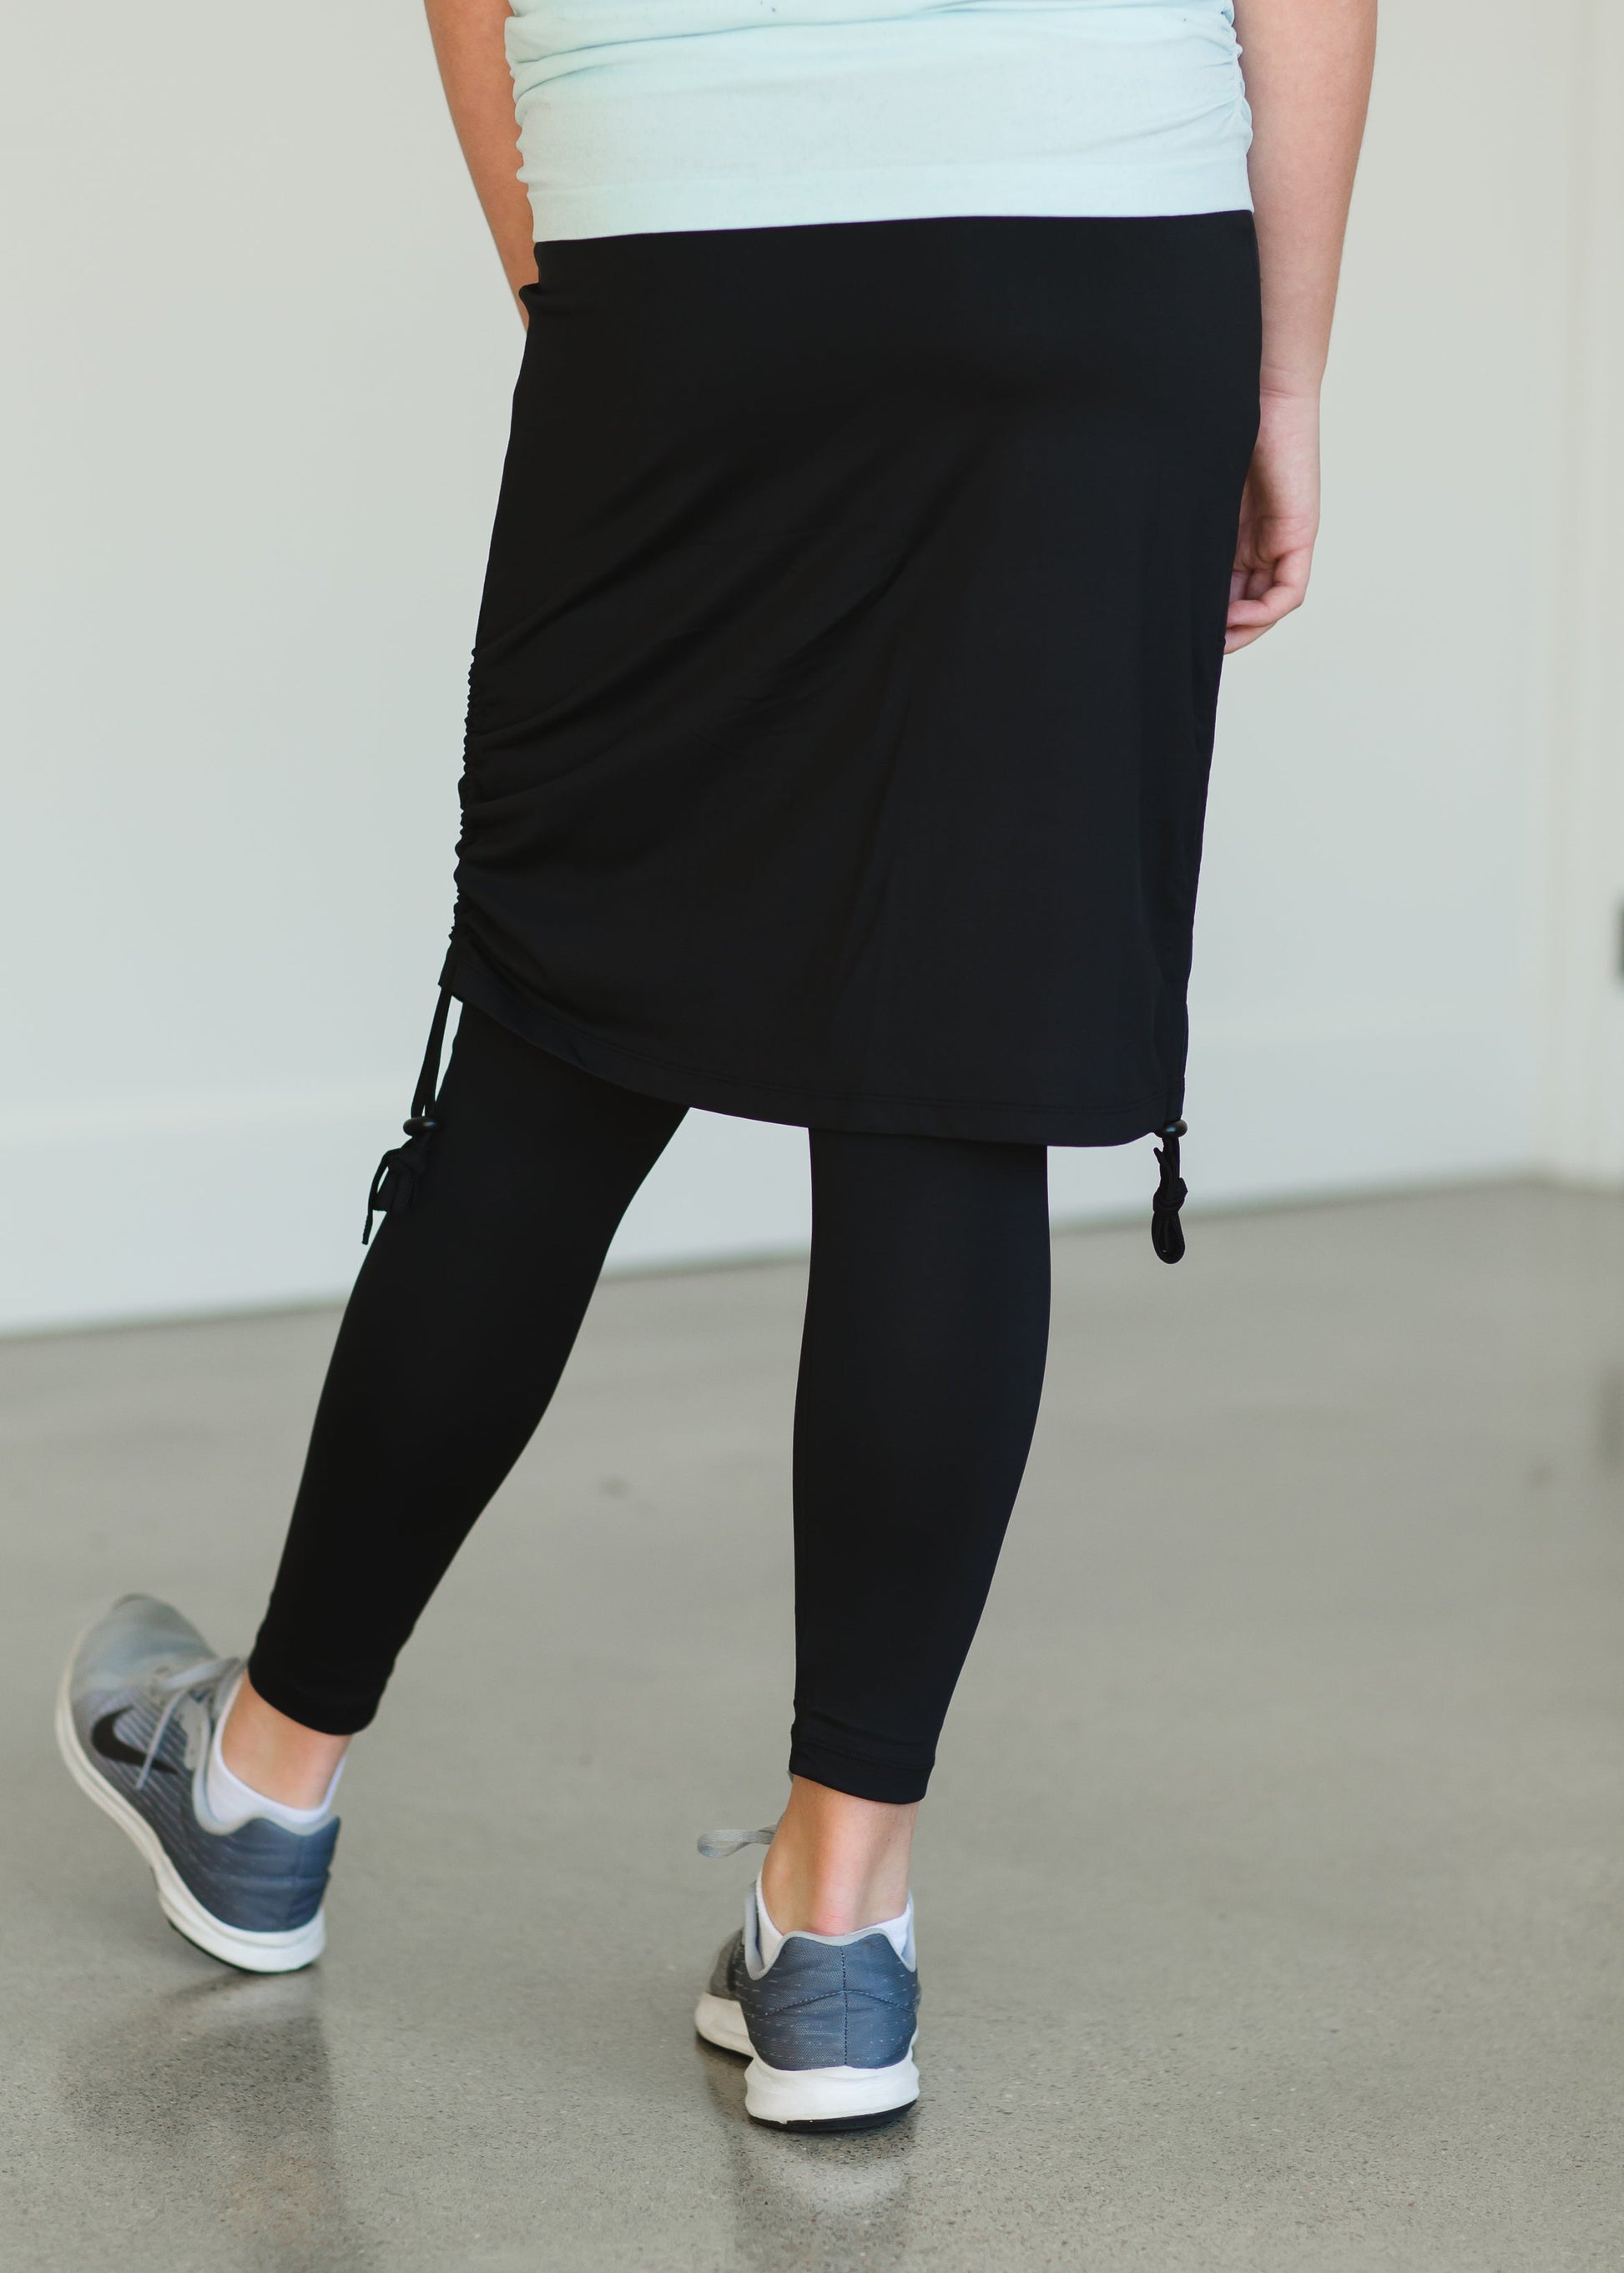 Snoga Black Side Tie Athletic Skirt - FINAL SALE – Inherit Co.